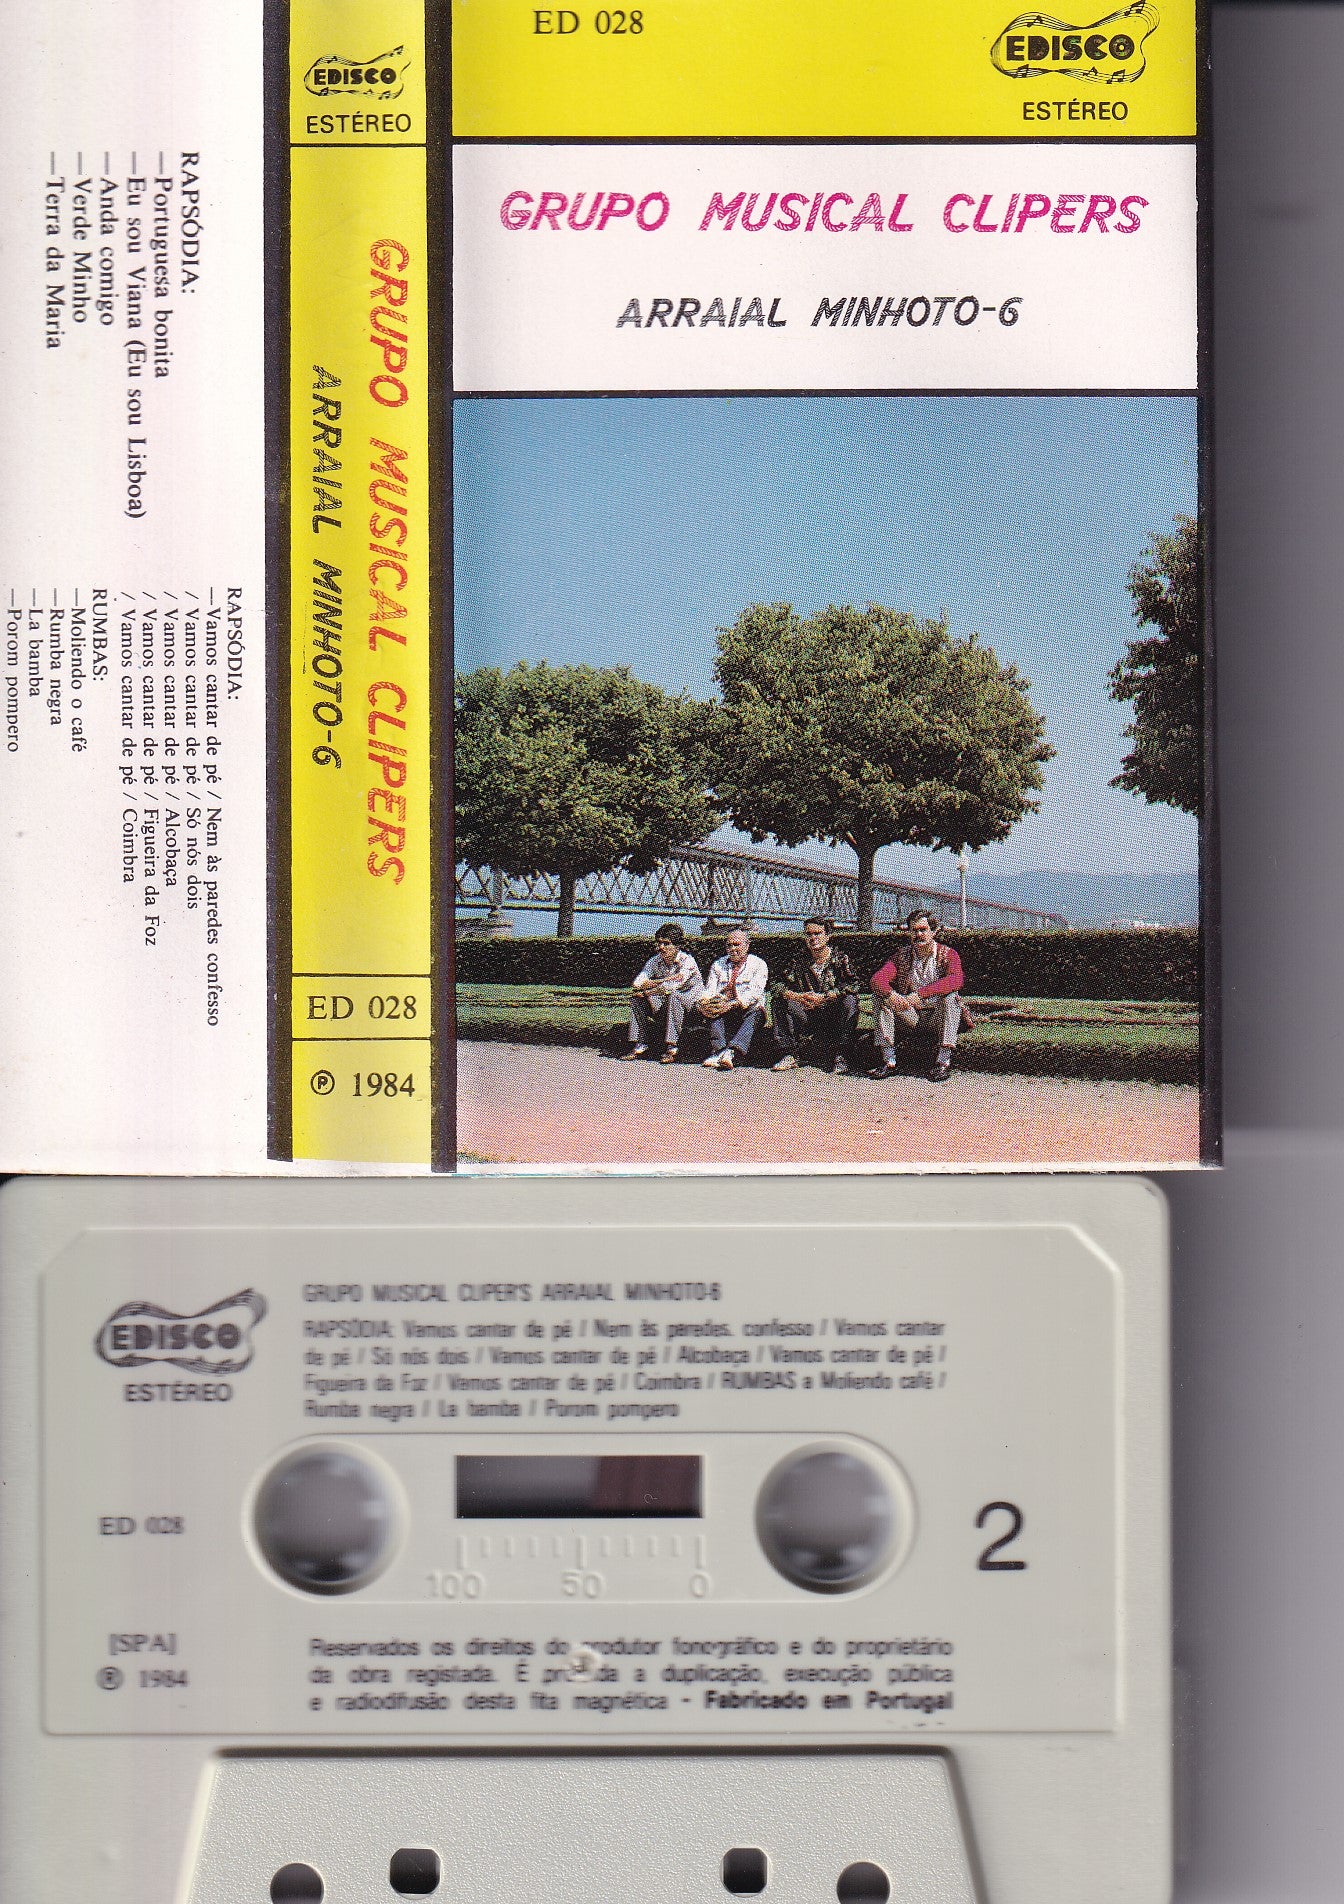 CASSETE- GRUPO MUSICAL CLIPERS ARRAIAL MINHOTO-6 - USADO